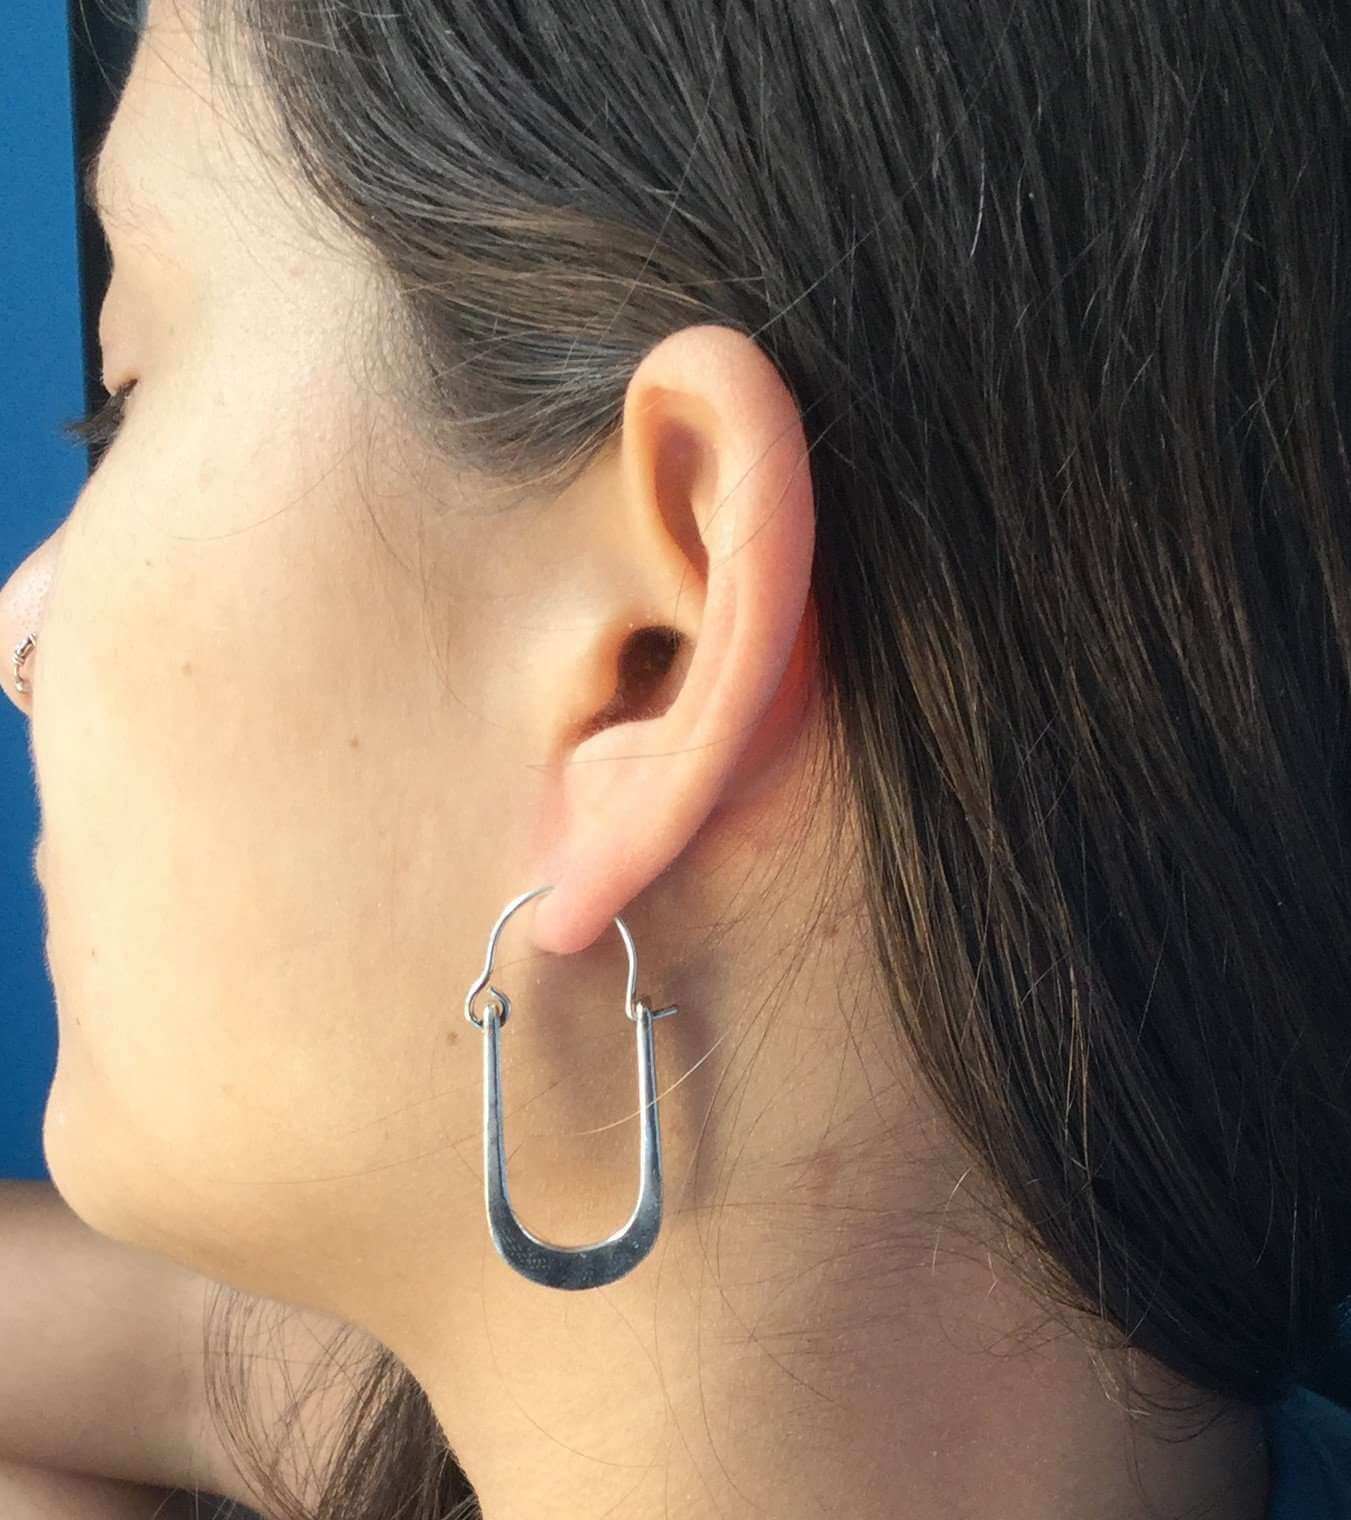 Silver U-Shaped Earrings